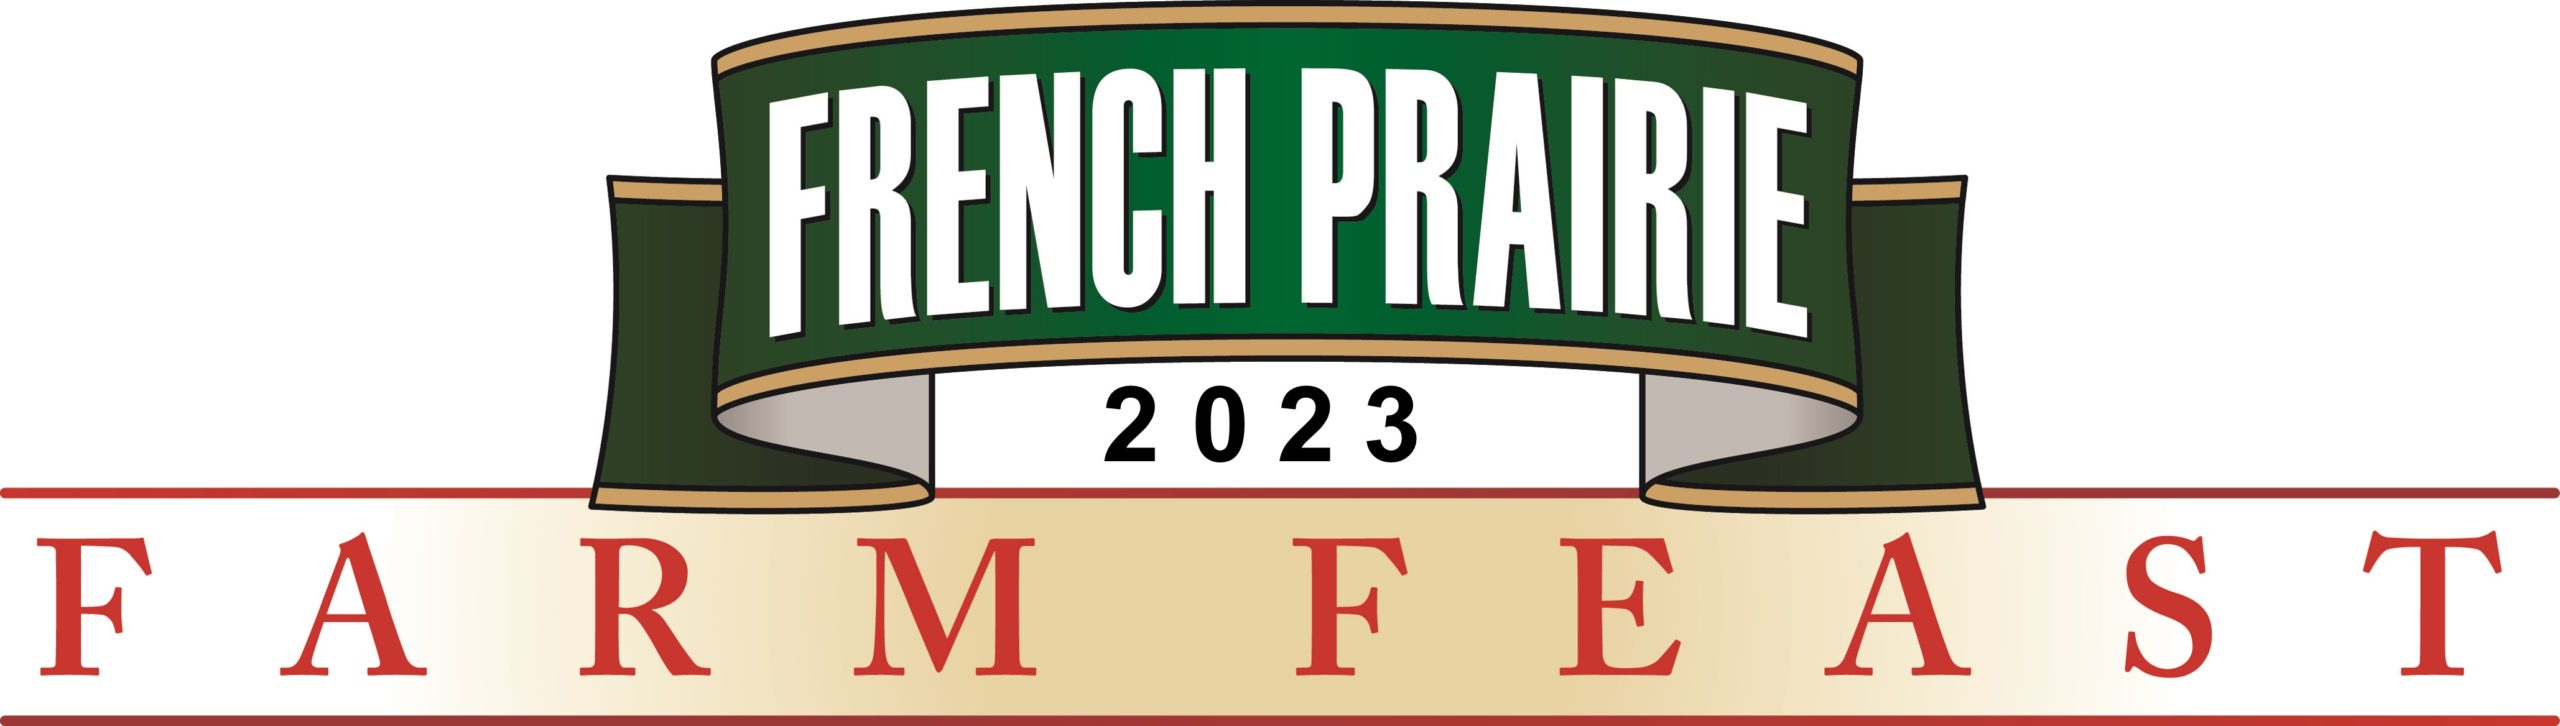 Farm Feast 2023